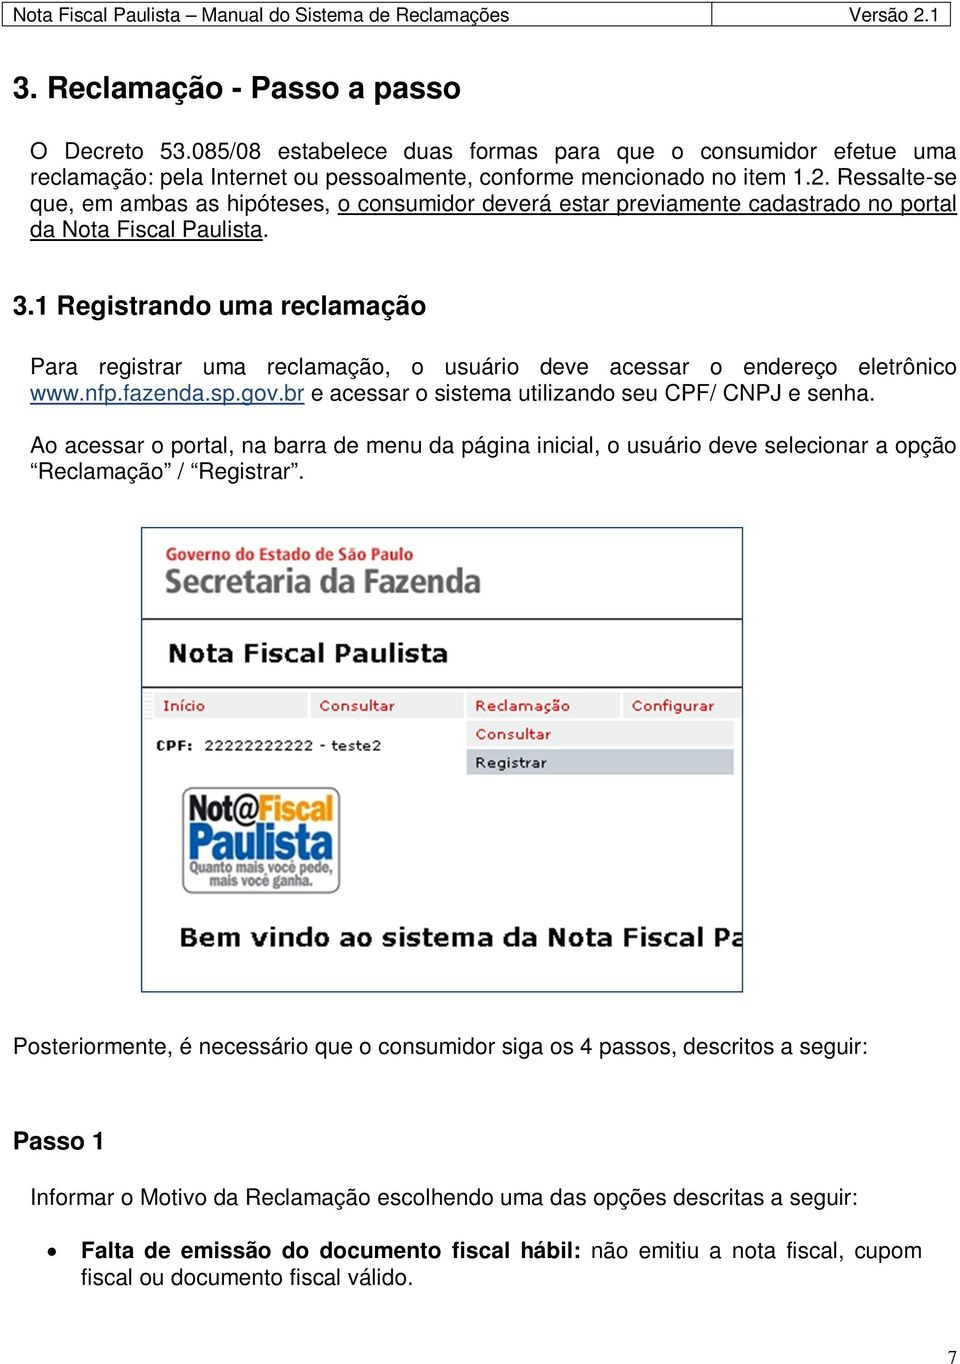 1 Registrando uma reclamação Para registrar uma reclamação, o usuário deve acessar o endereço eletrônico www.nfp.fazenda.sp.gov.br e acessar o sistema utilizando seu CPF/ CNPJ e senha.